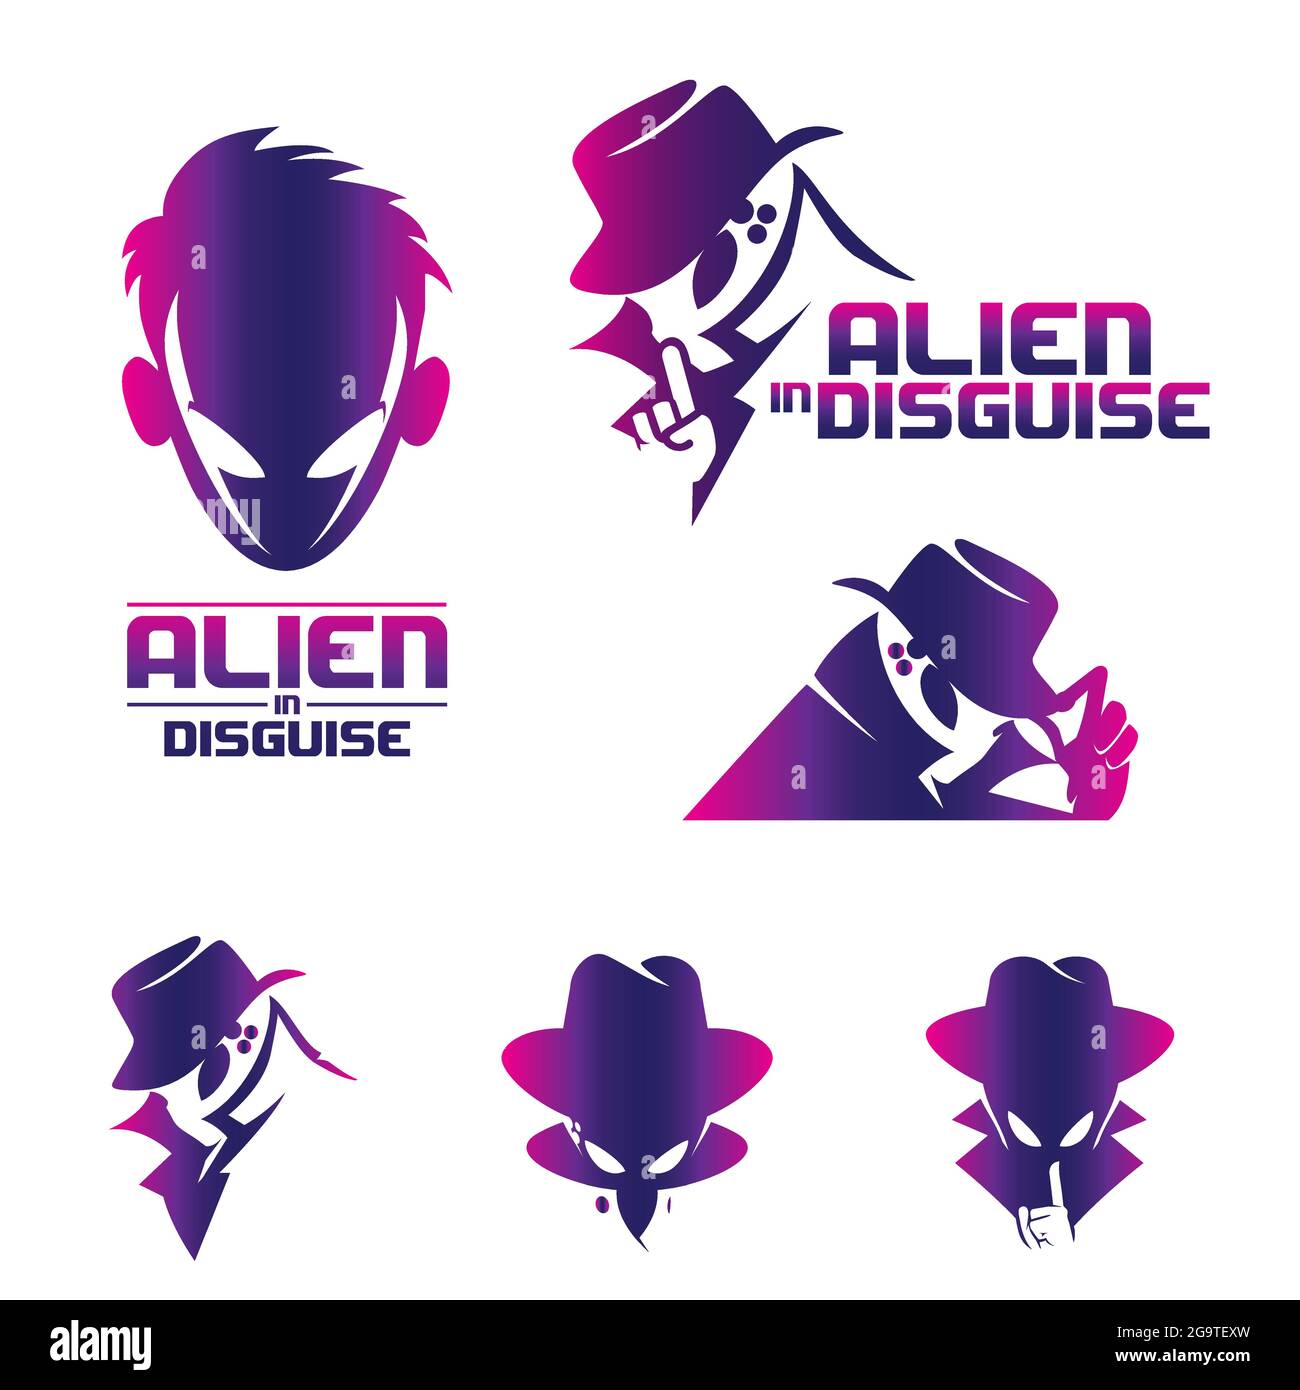 Alien in Dissimulise Concept volume 2 Imposta vettore per uso commerciale. Disponibile in varie versioni Illustrazione Vettoriale